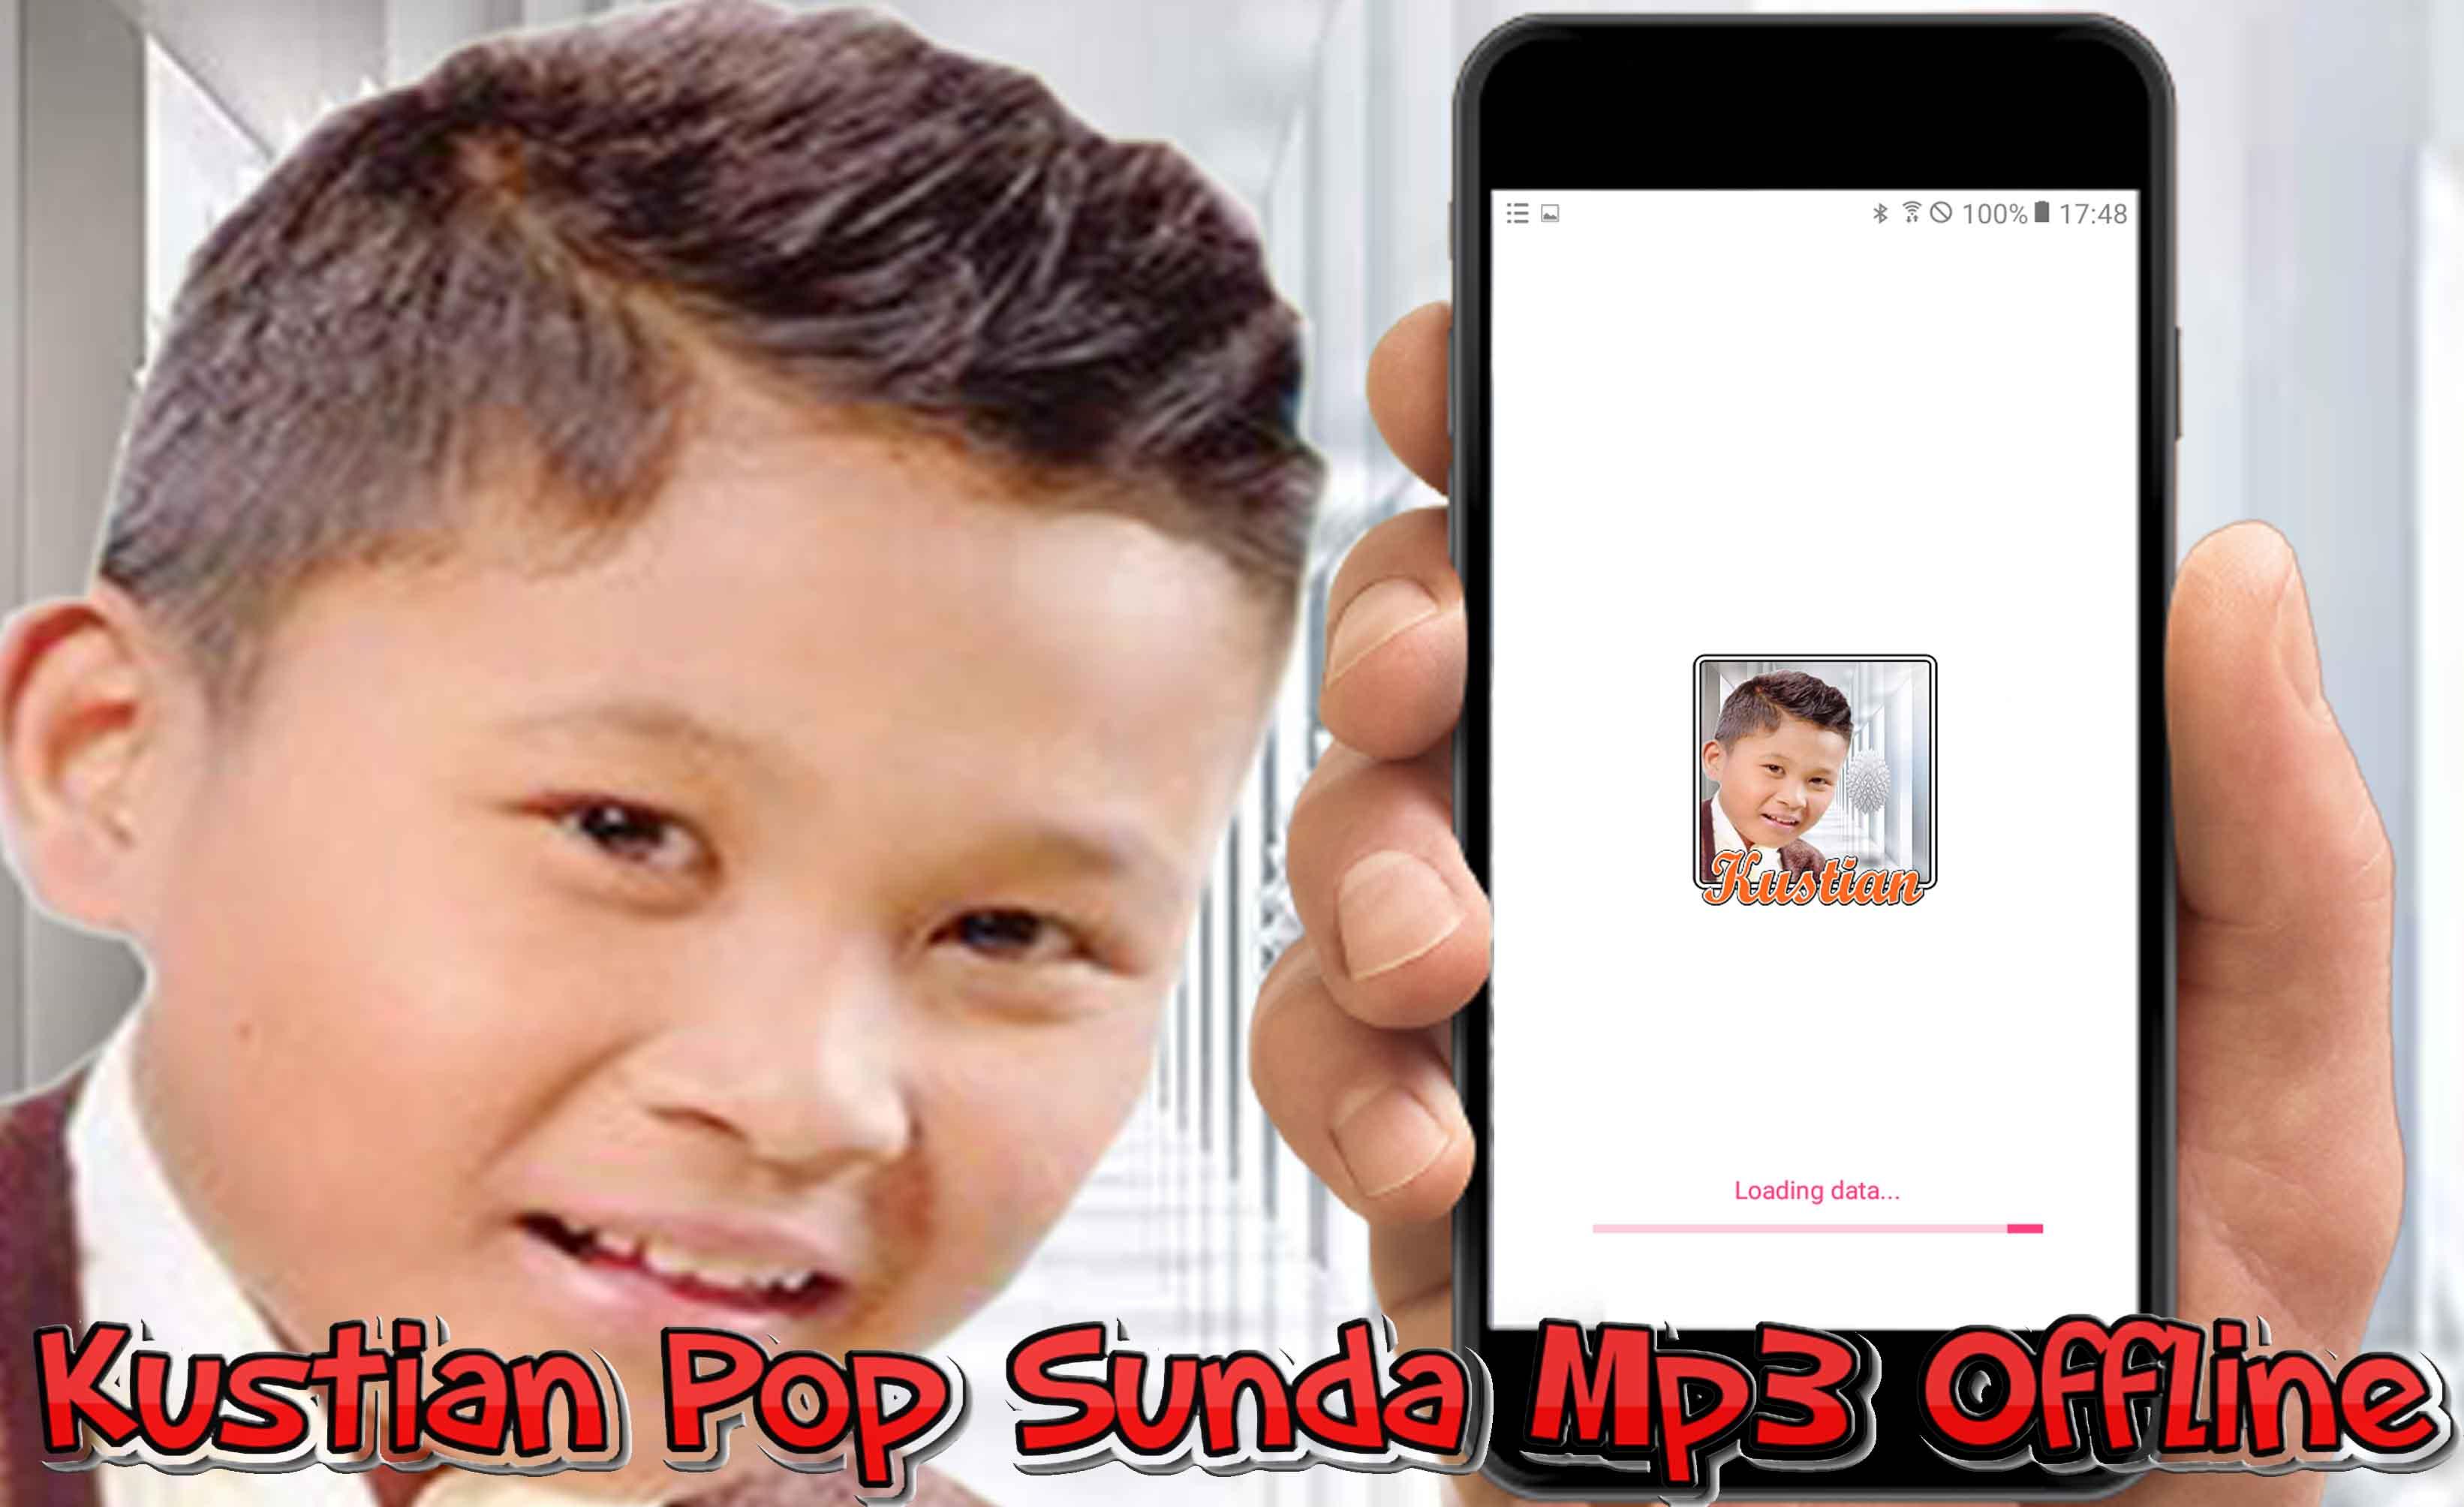 Kustian Pop Sunda Mp3 Offline APK pour Android Télécharger